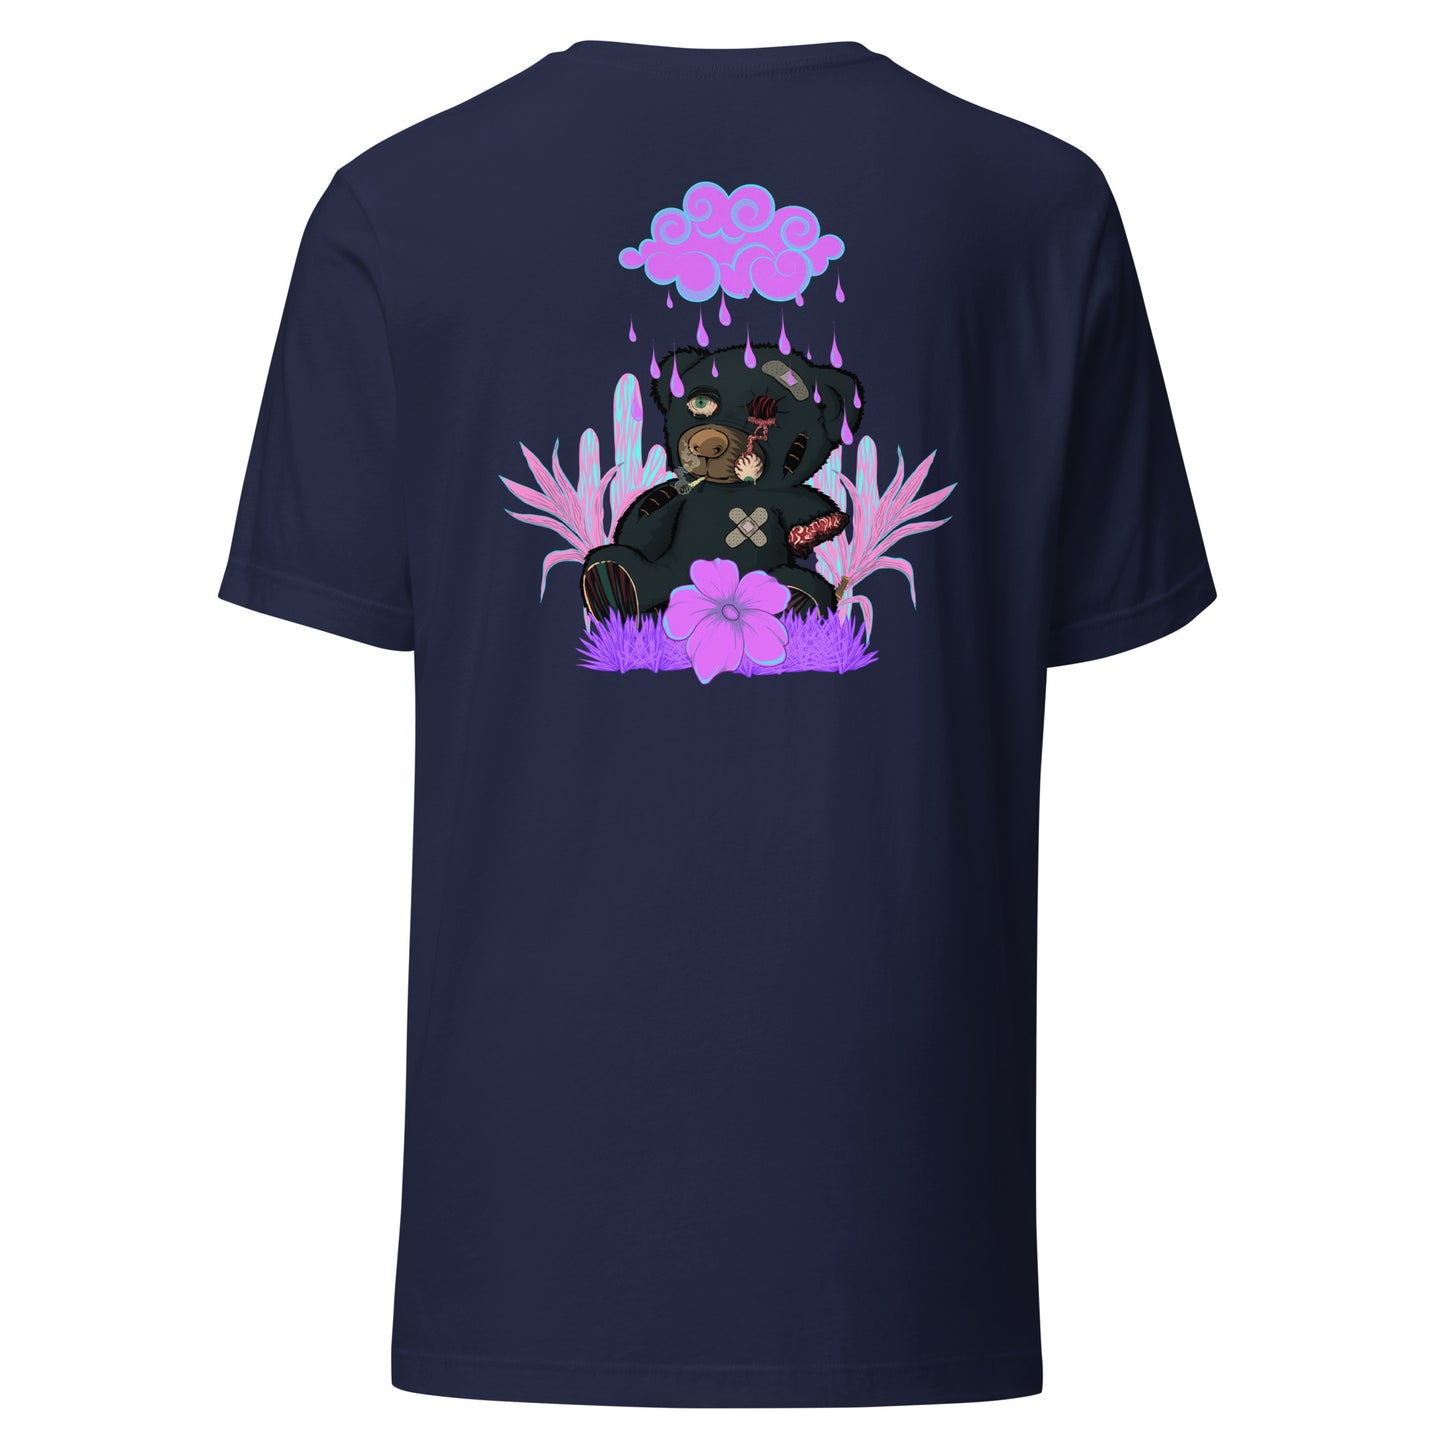 T-Shirt trasher not for kids effet néon weed et motif floral t-shirt de face unisex couleur navy